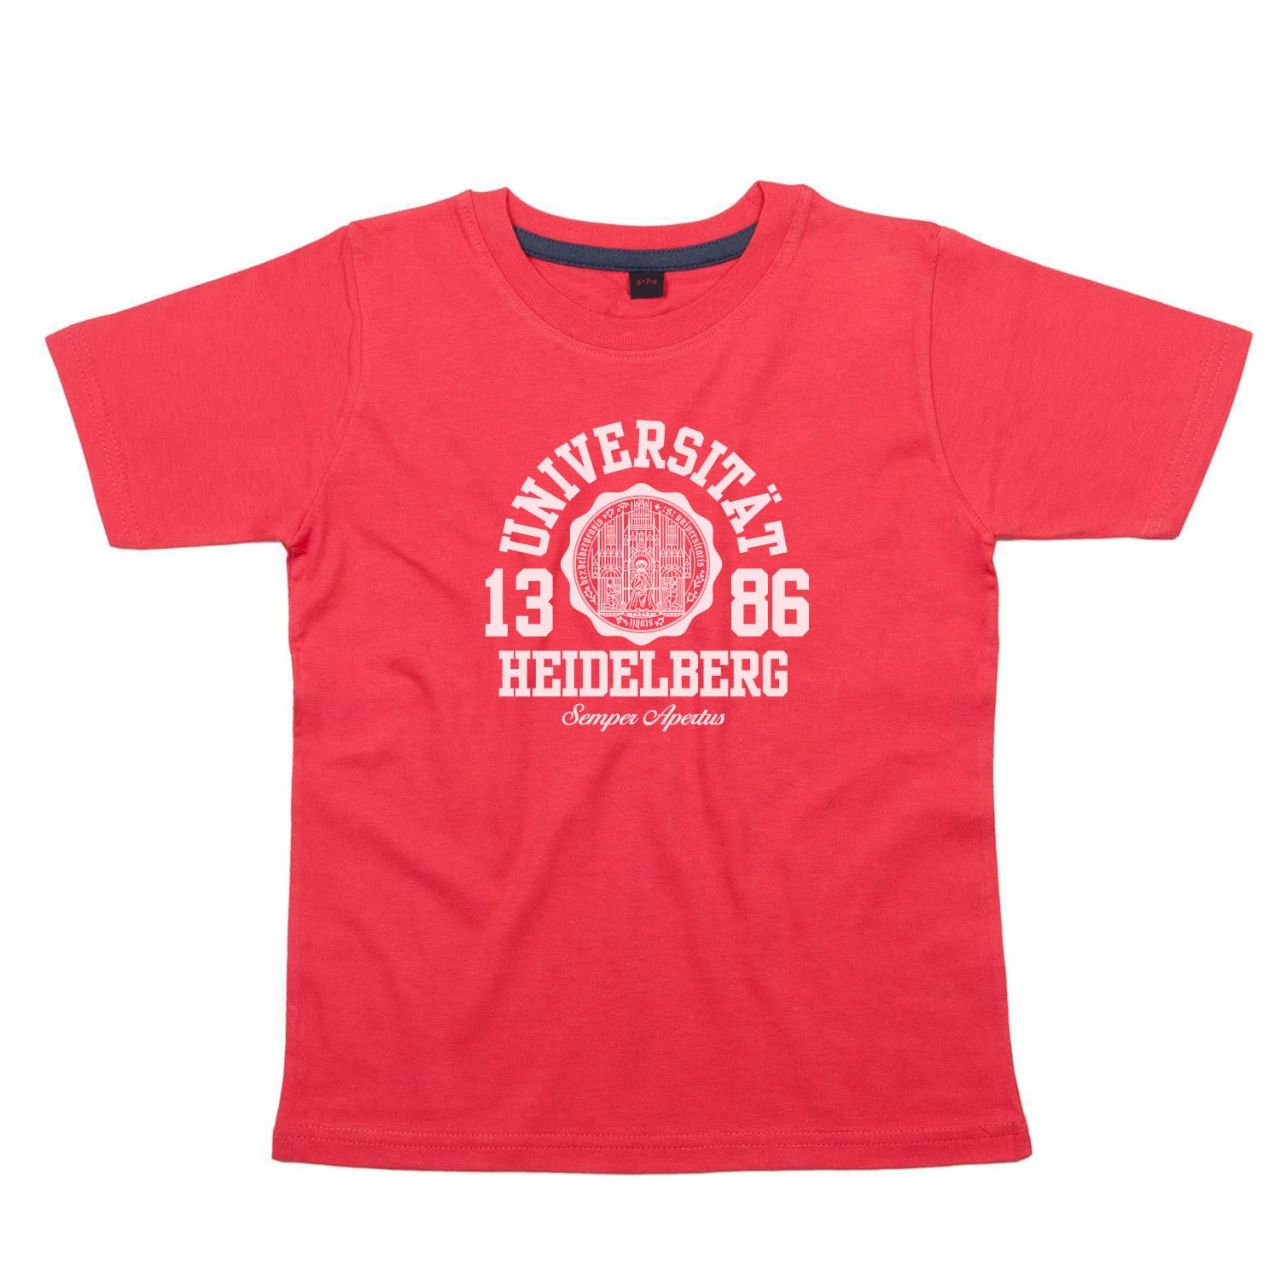 Kids T-Shirt, red, marshall